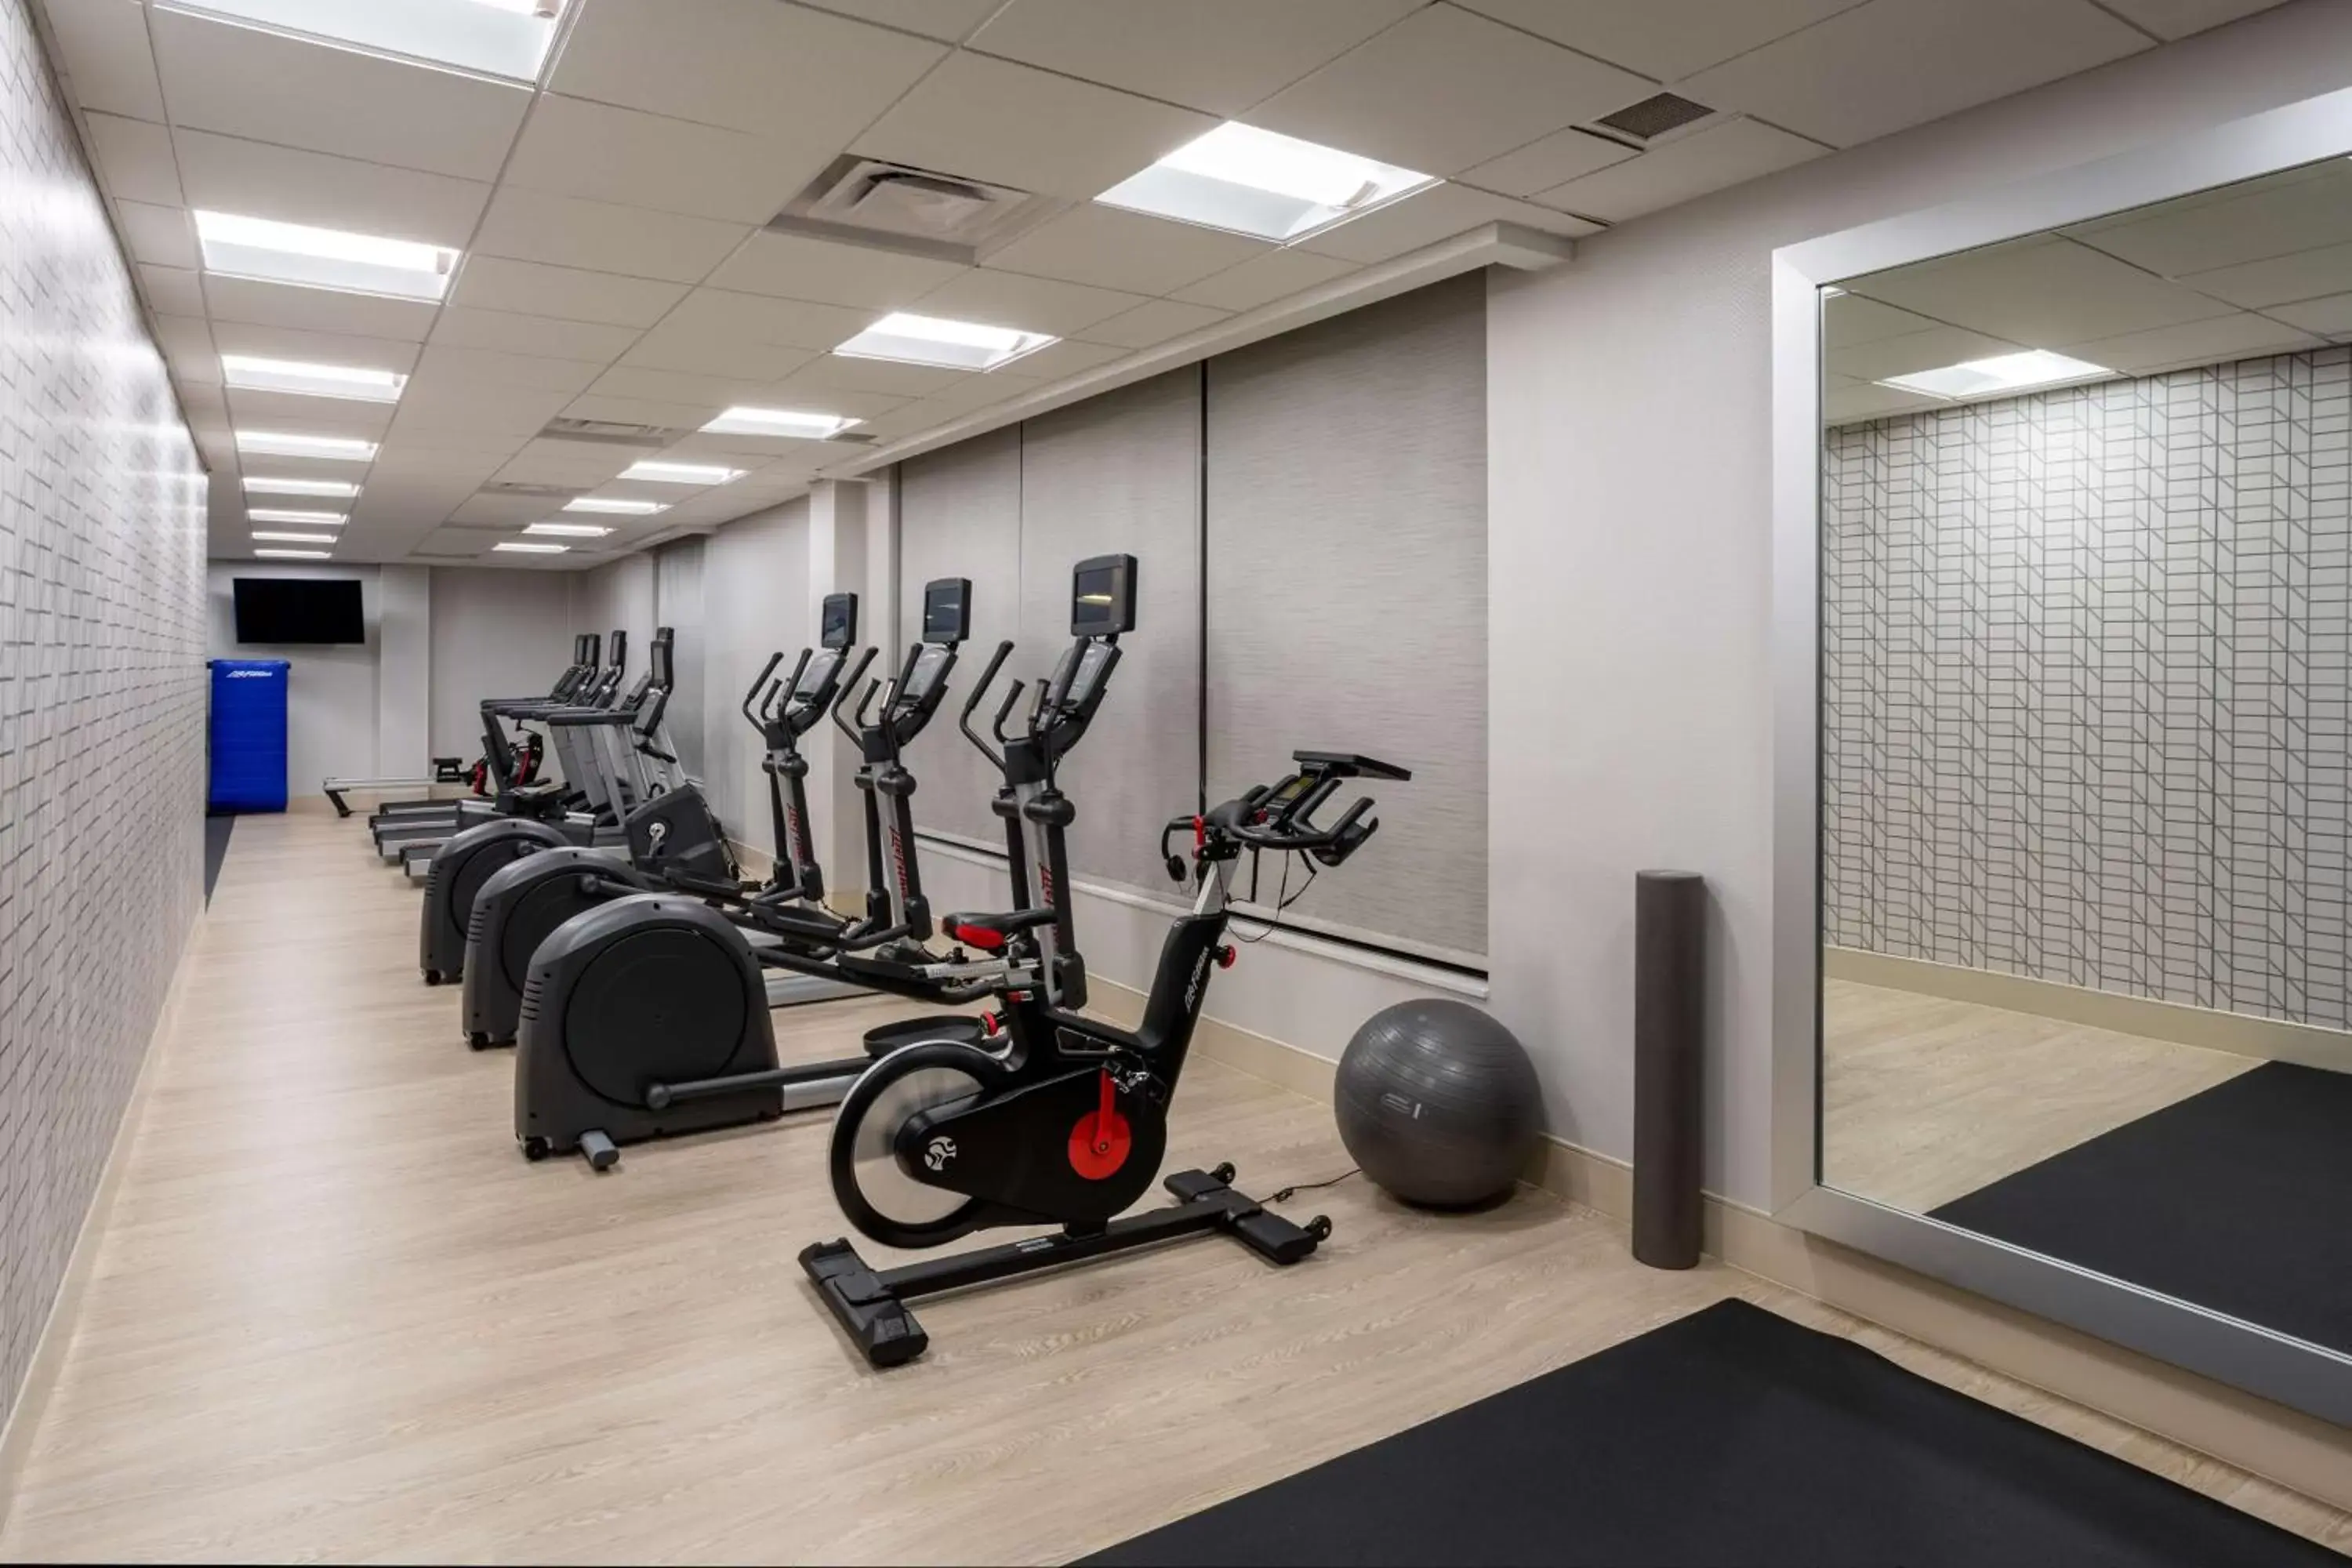 Fitness centre/facilities, Fitness Center/Facilities in Hilton Garden Inn Albuquerque Downtown, Nm